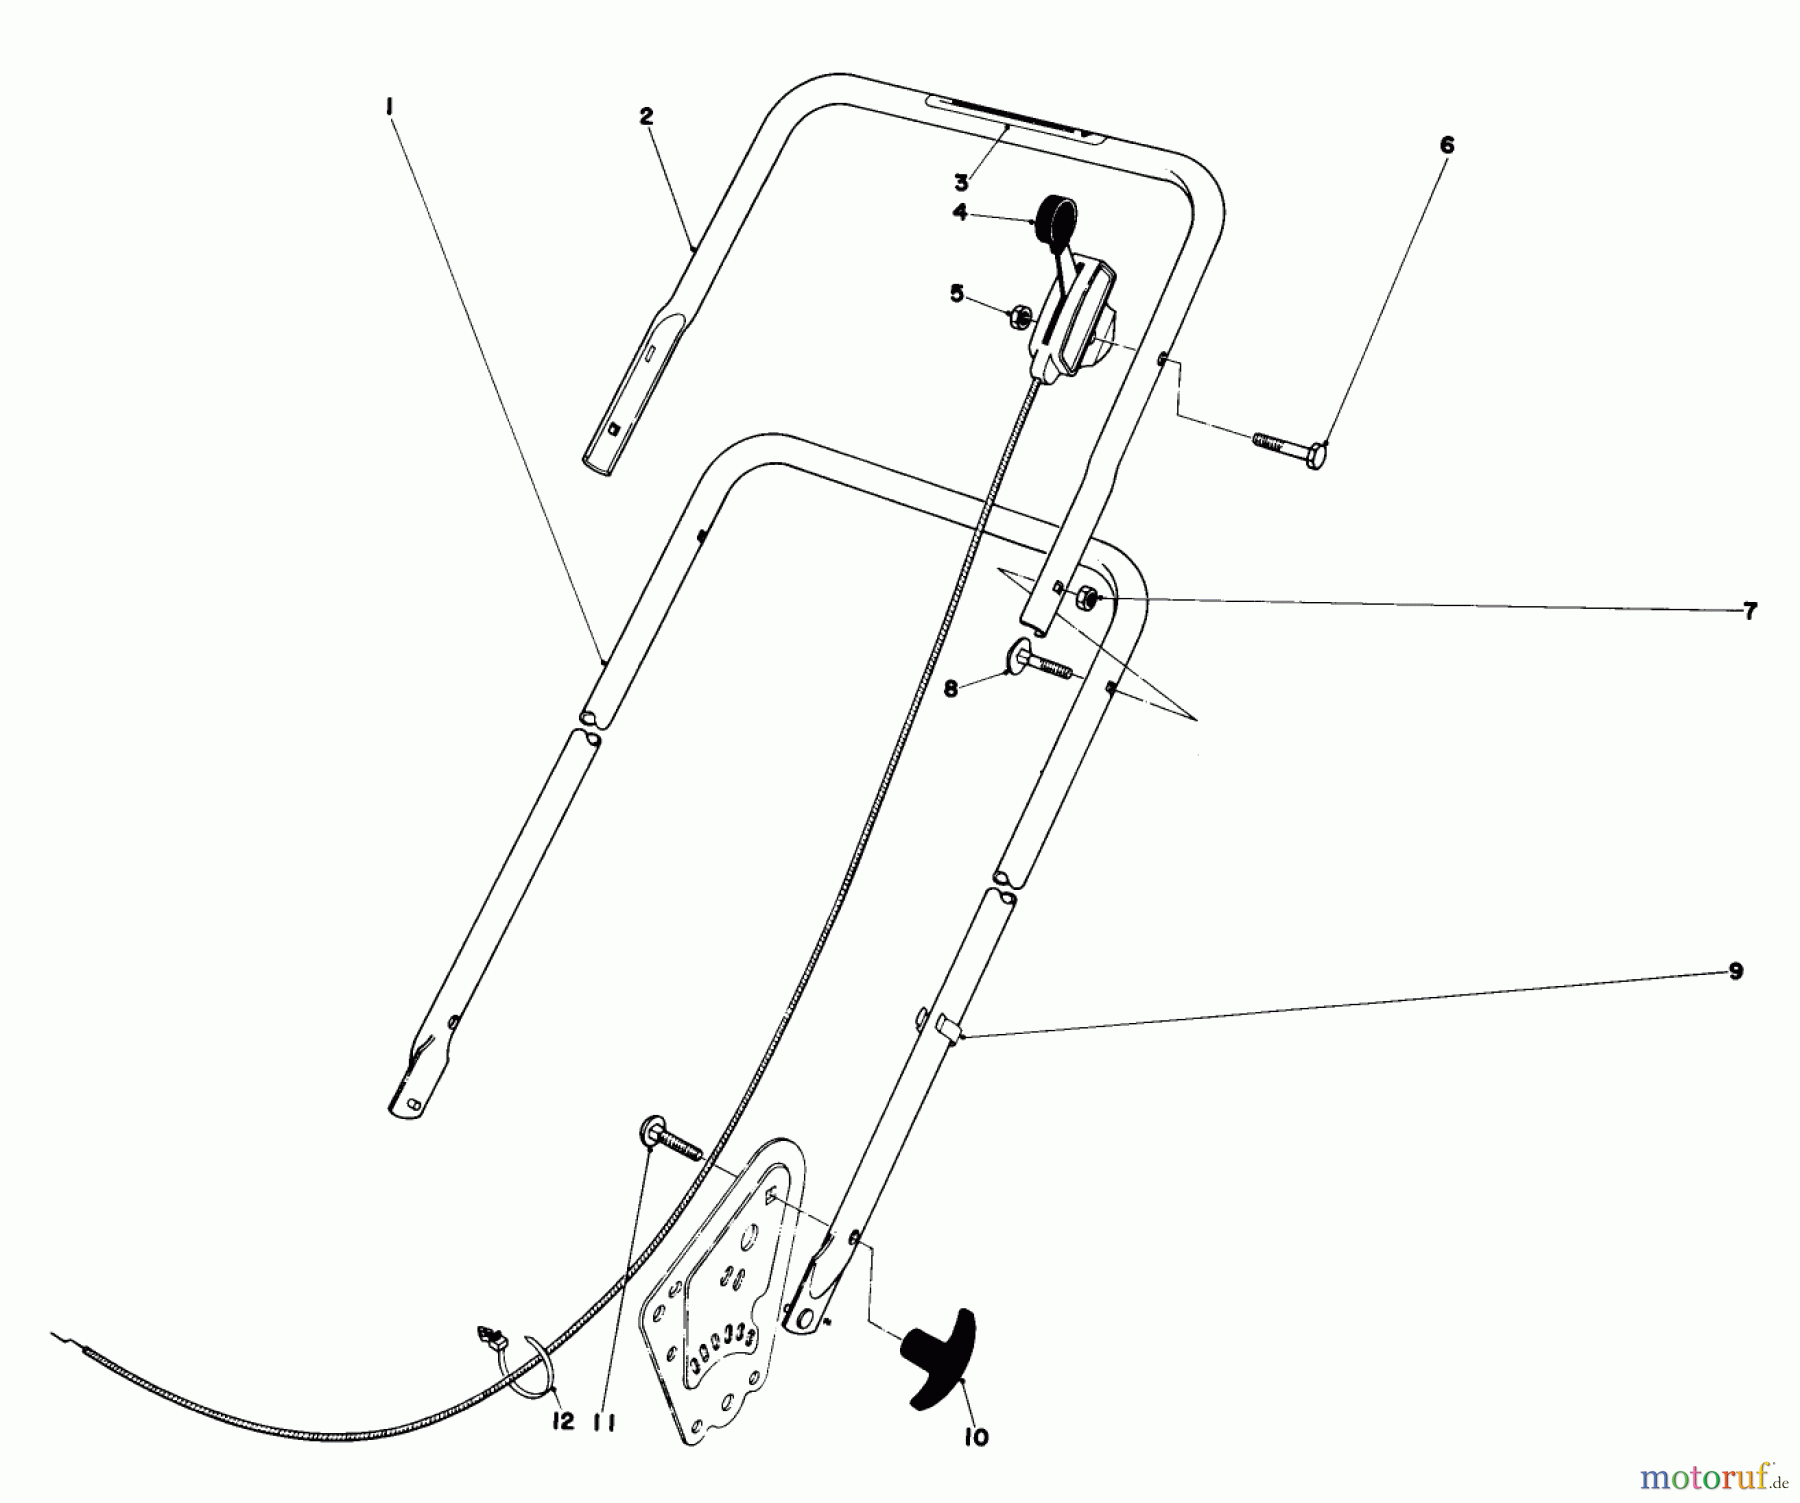  Toro Neu Mowers, Walk-Behind Seite 1 16830 - Toro Lawnmower, 1979 (9000001-9999999) HANDLE ASSEMBLY (MODEL NO.16820)